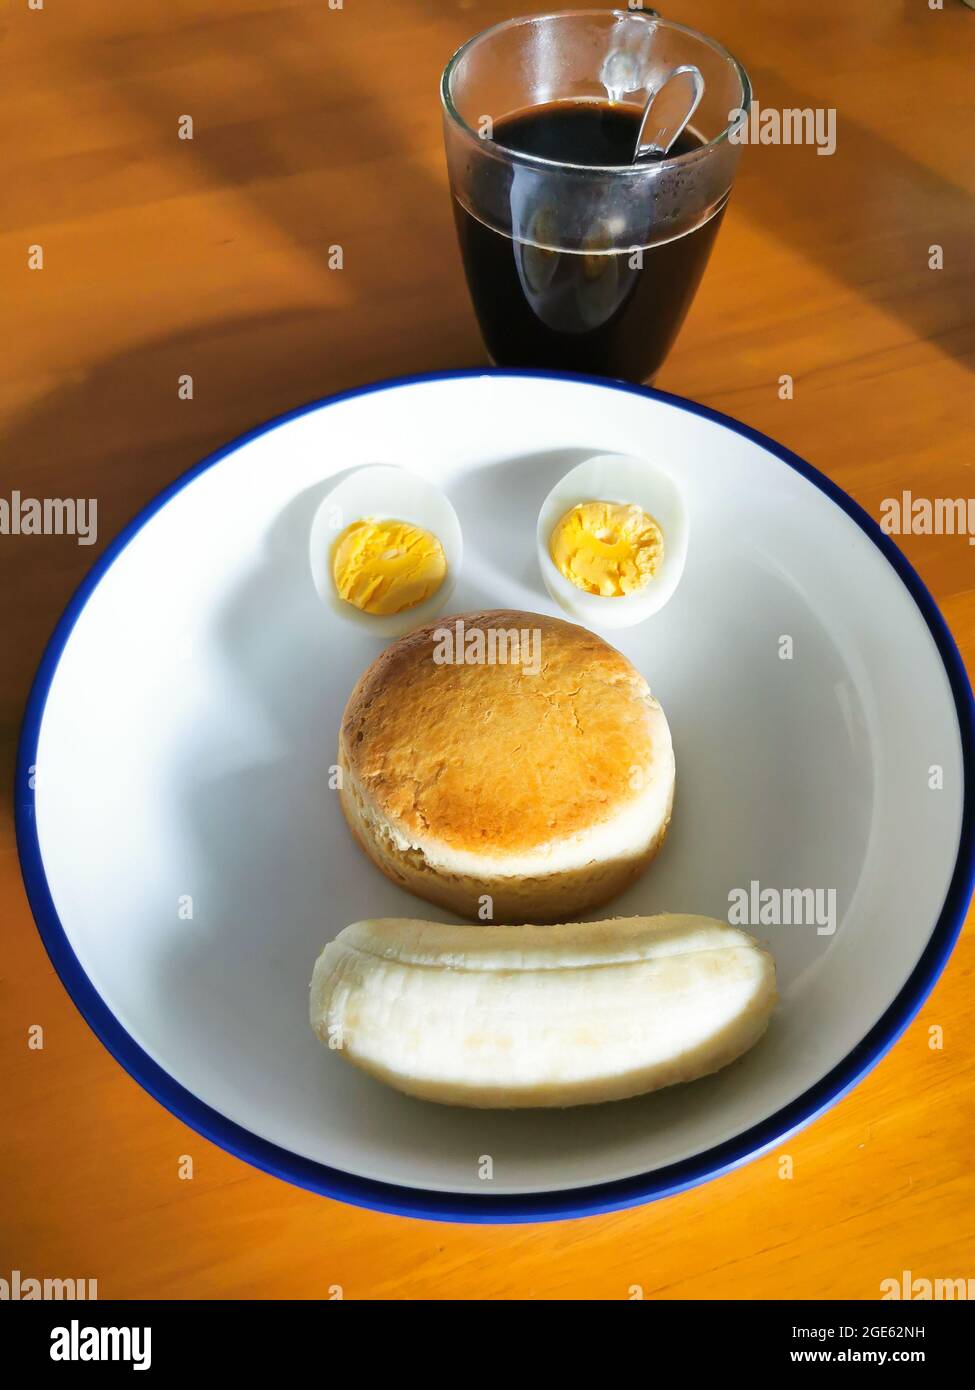 Plats faits maison servis sur une assiette ronde blanche sur une table en bois. Une tasse de café est placée sur le côté de la plaque alimentaire. Dans la plaque alimentaire ont coupé des tranches d'œufs durs, de la tarte Banque D'Images